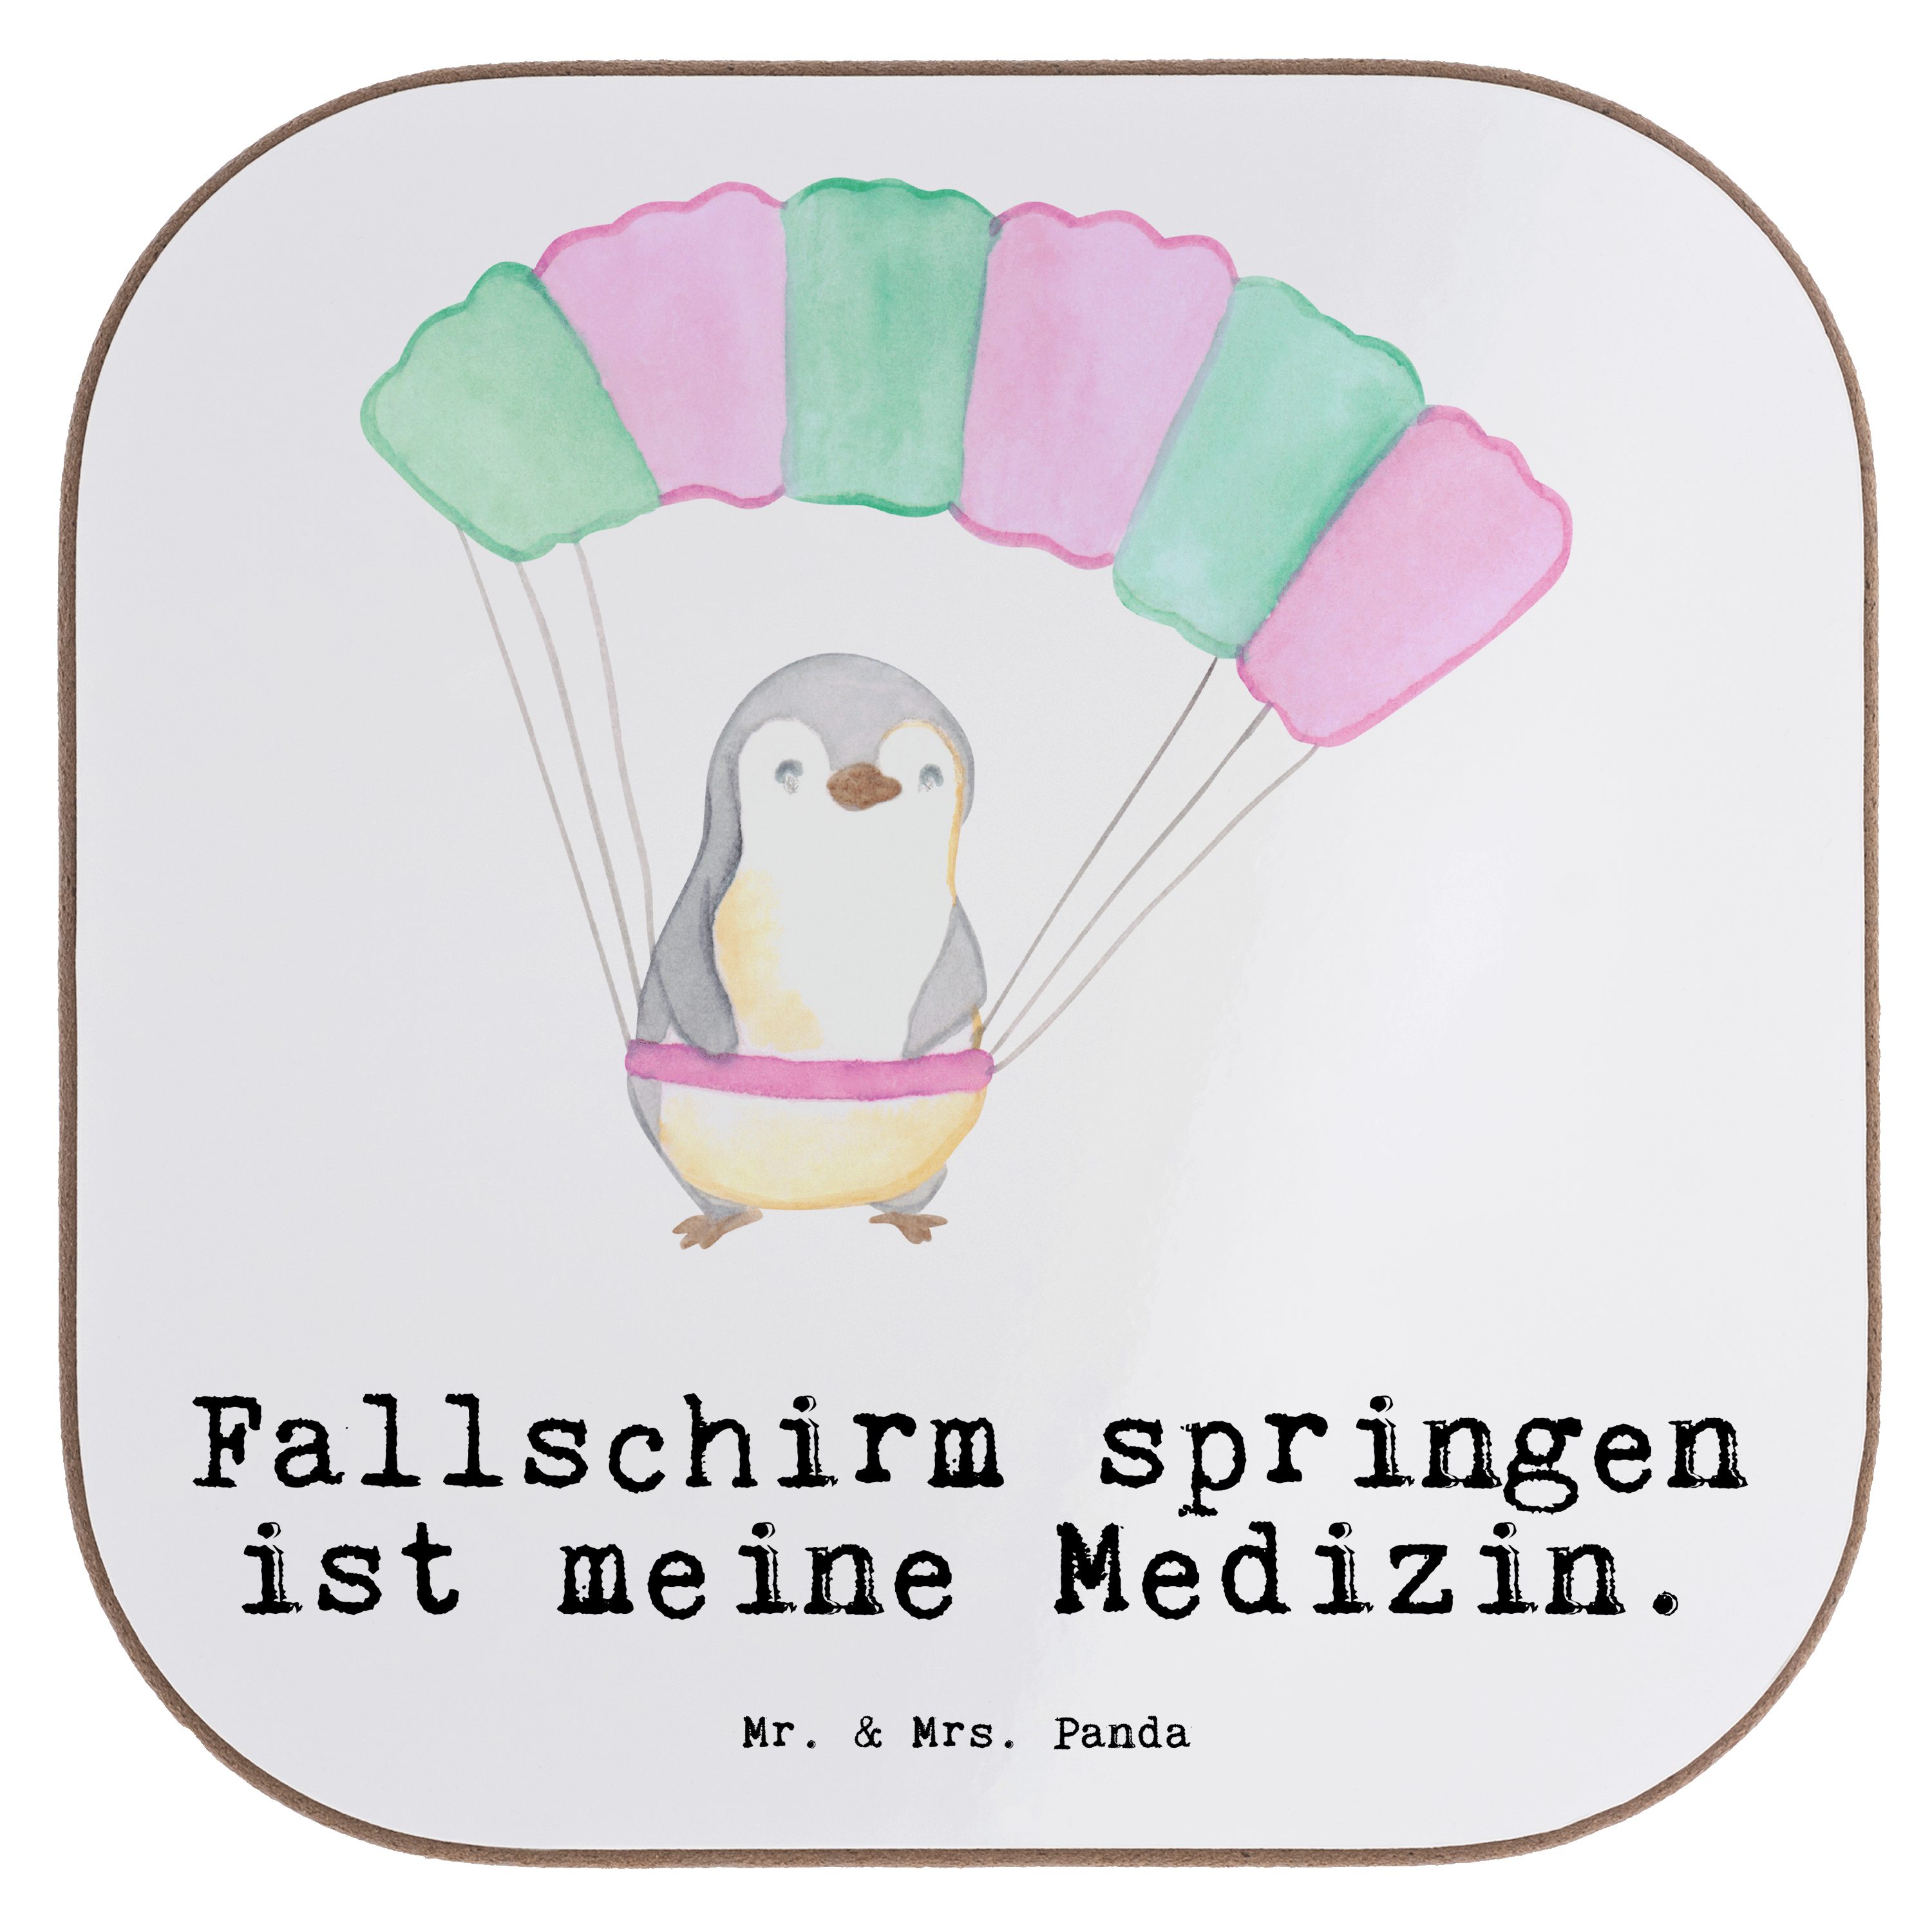 Mr. & Mrs. Panda Getränkeuntersetzer Pinguin Fallschirm springen Medizin - Weiß - Geschenk, Schenken, Unte, 1-tlg.